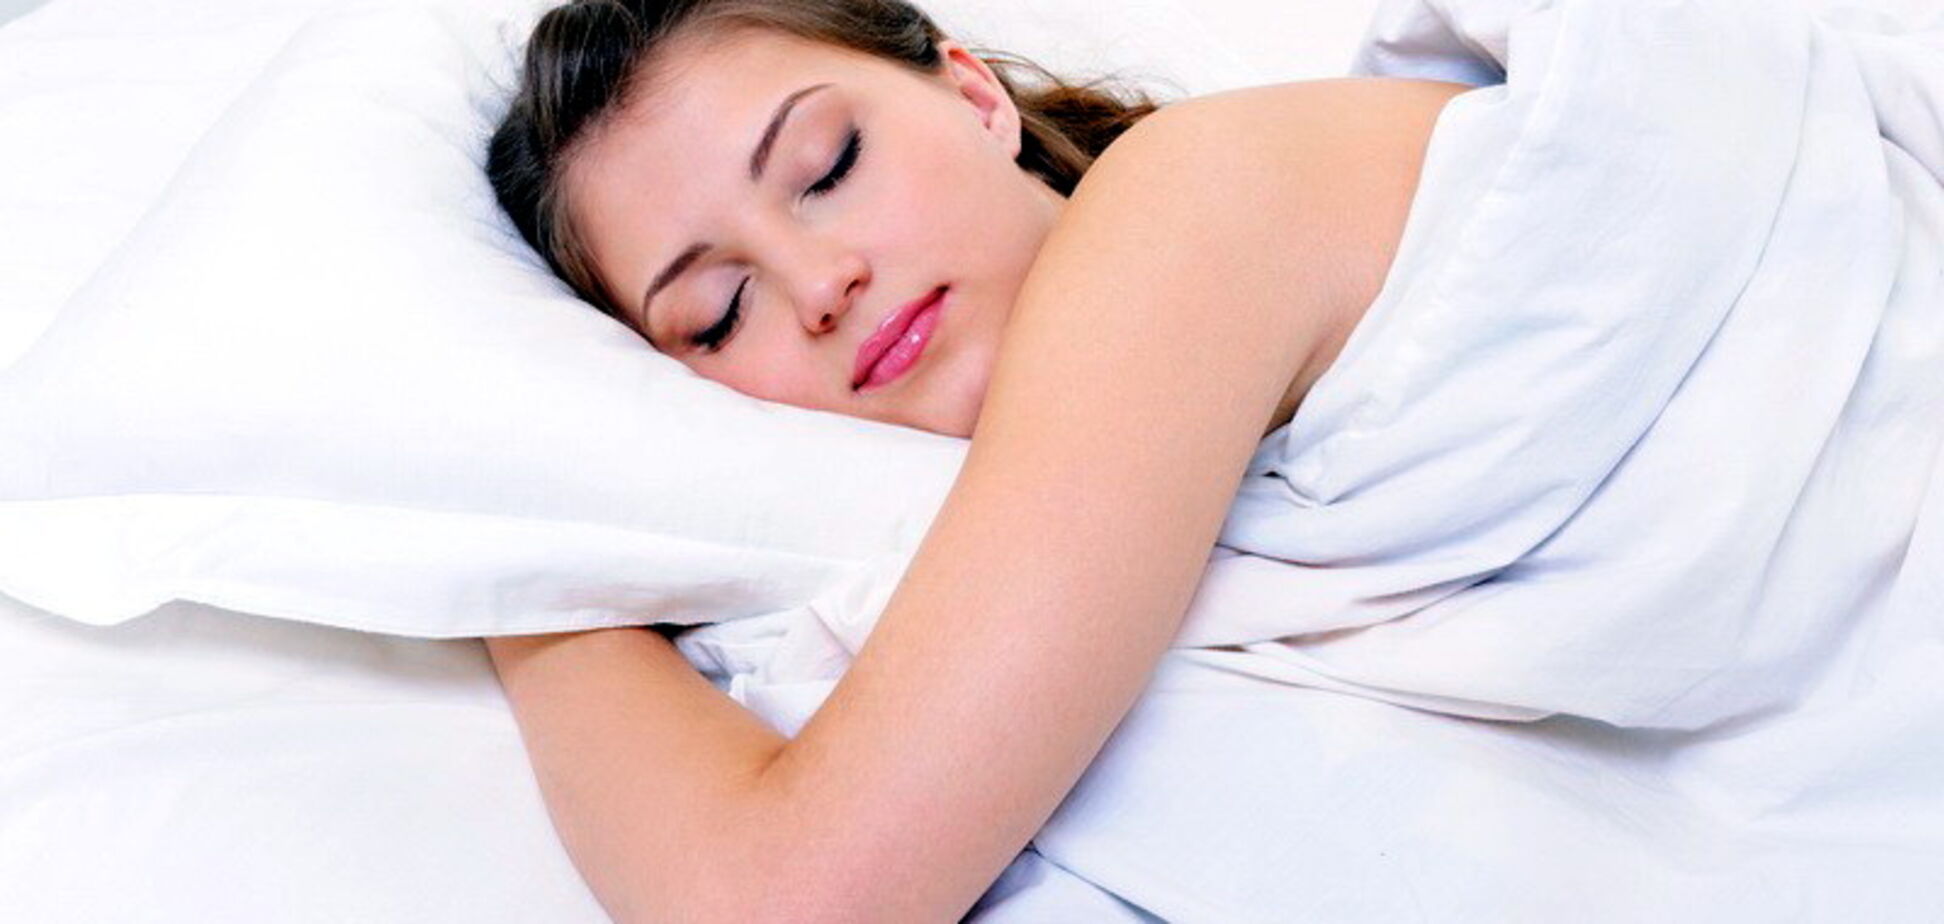 Ученые обьяснили, почему женщинам необходим более длительный сон